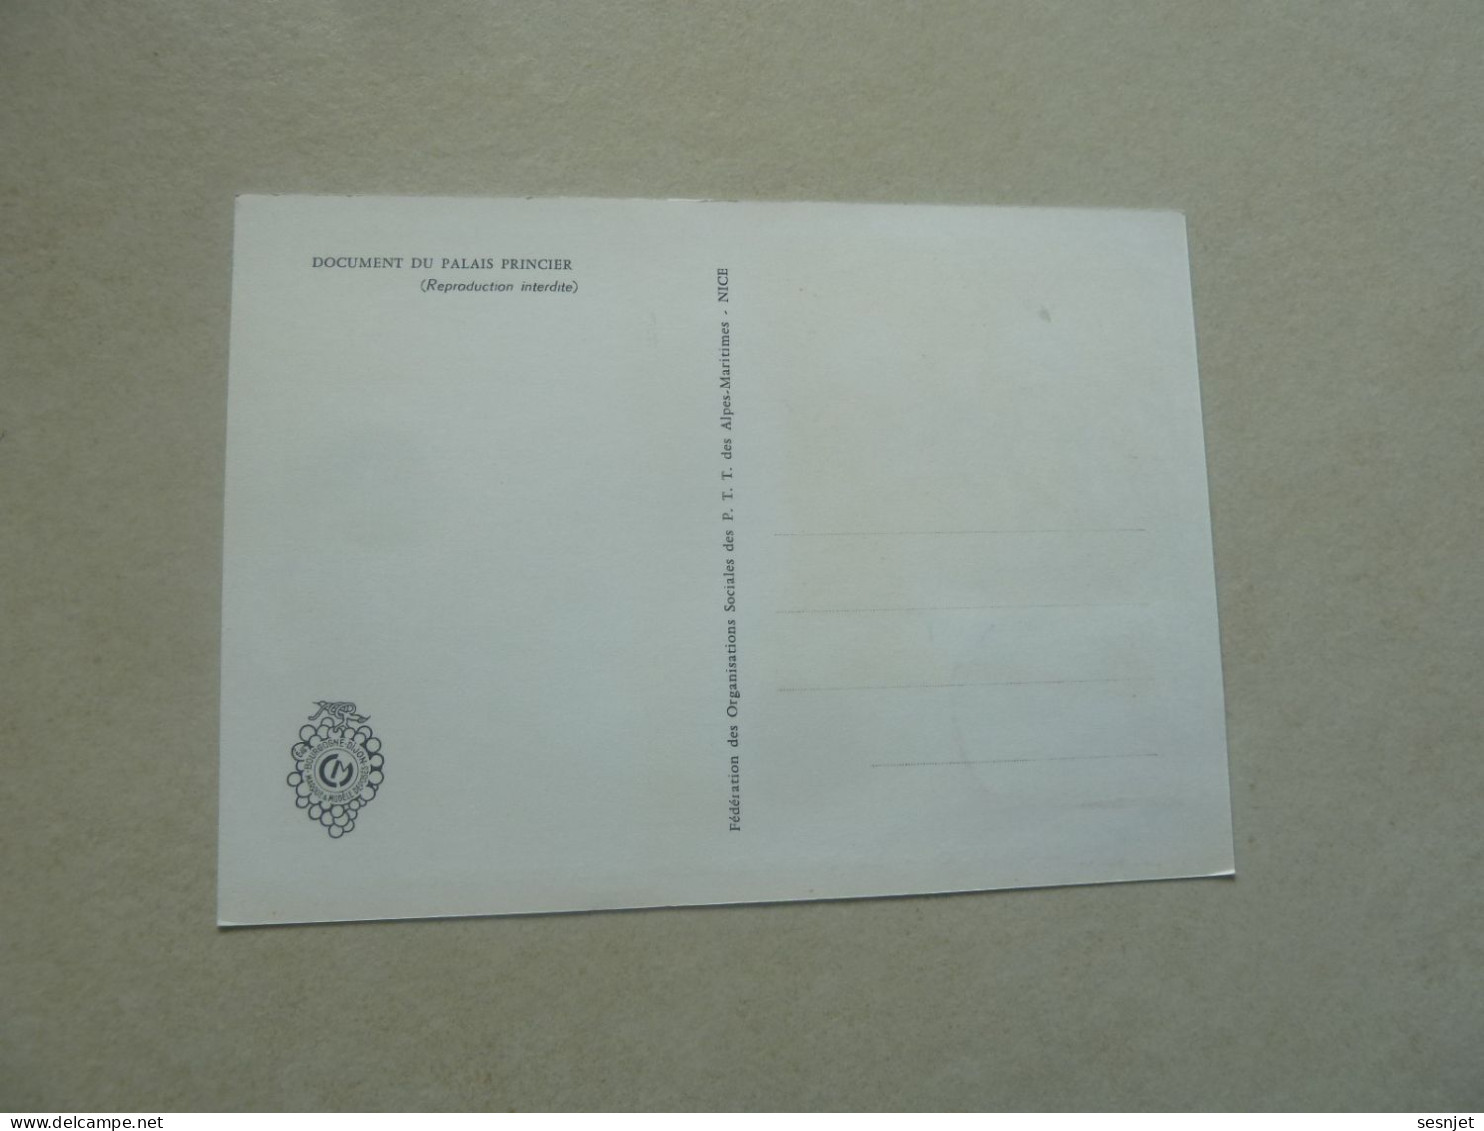 Monaco - Le Palais Au 18ème Siècle - 12c. - Yt 677 - Carte Premier Jour D'Emission - Année 1966 - - Cartas Máxima